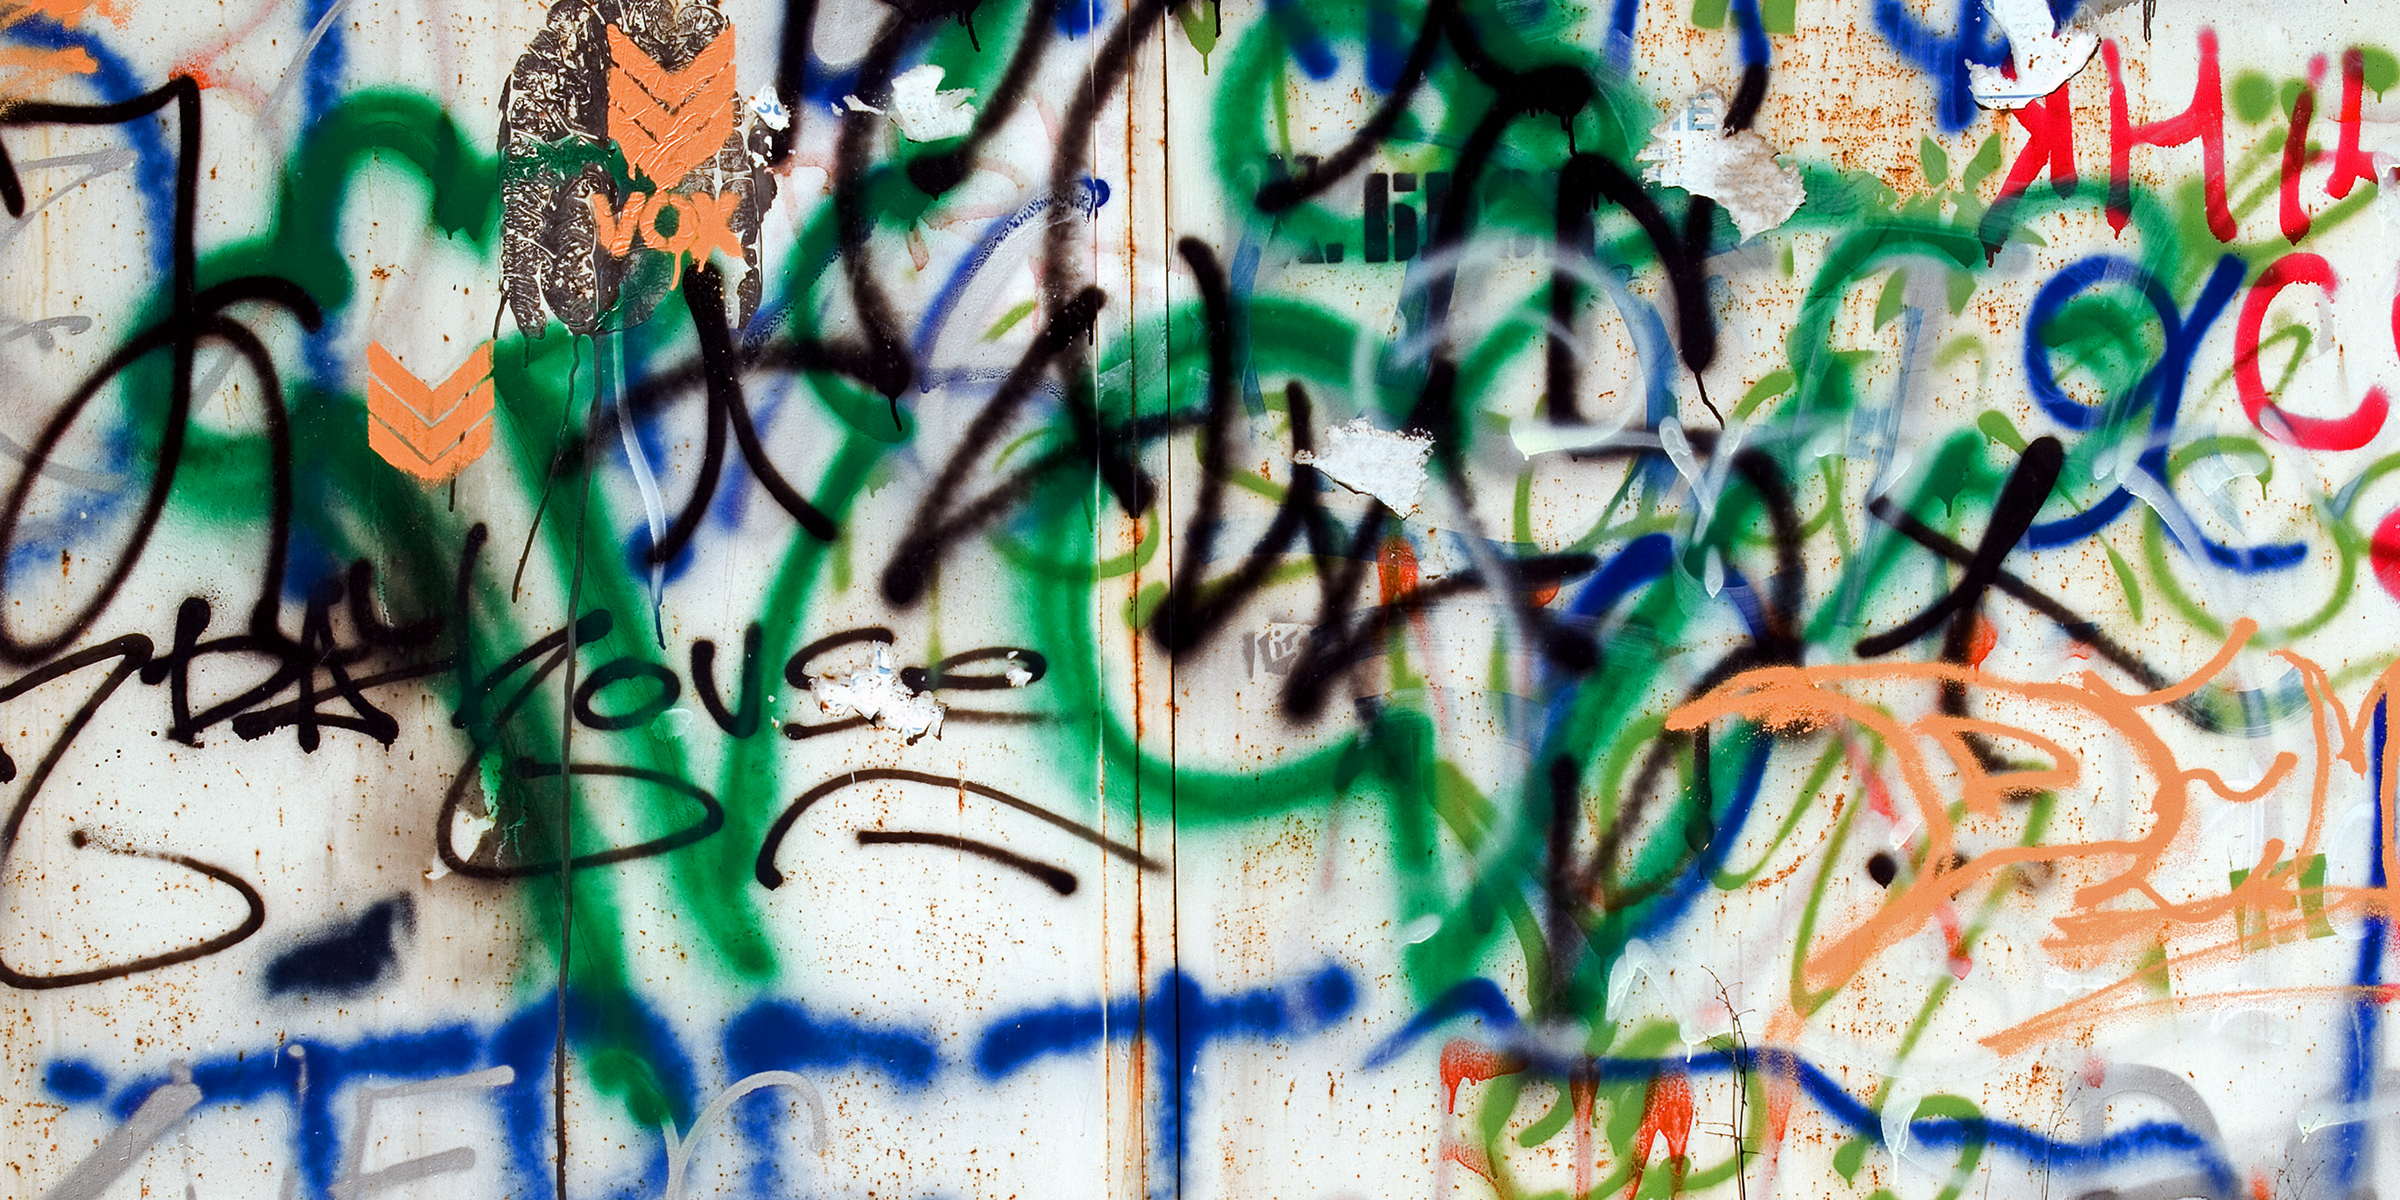 Graffiti on a white wall | Source: Shutterstock